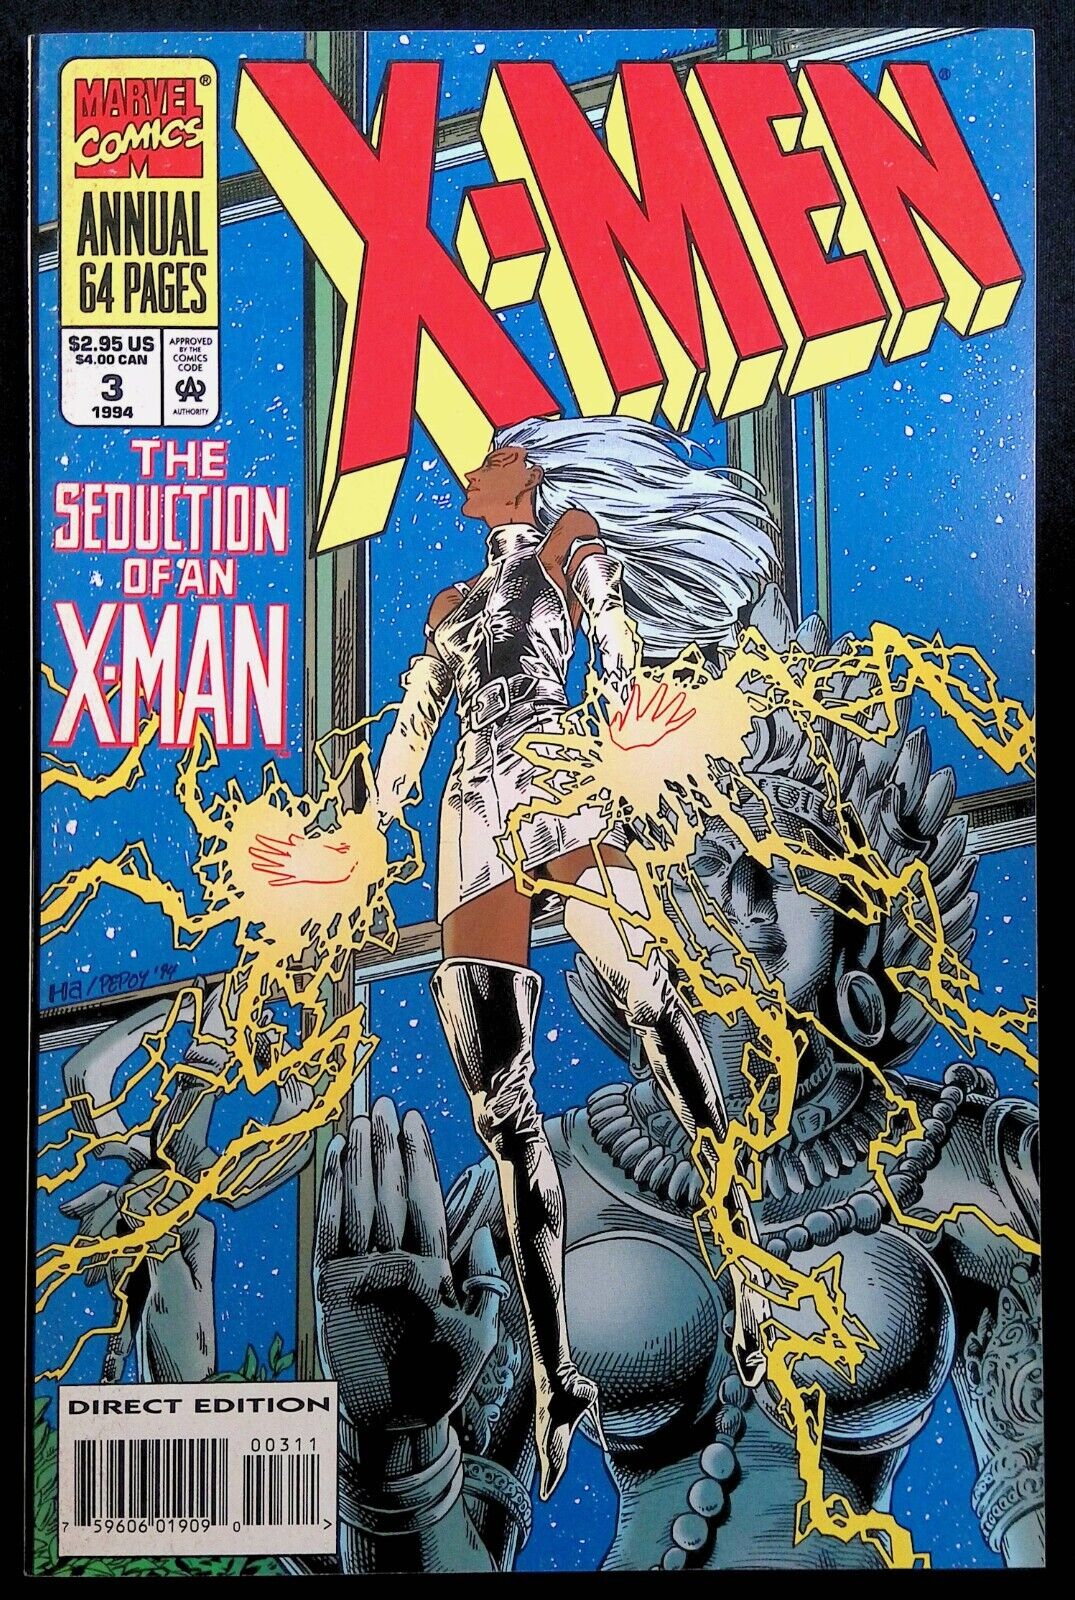 X-MEN ANNUAL #3 ~ 1ST APP. SECOND INNER CIRCLE ~ VF 1994 MARVEL COMICS ~ GENE HA